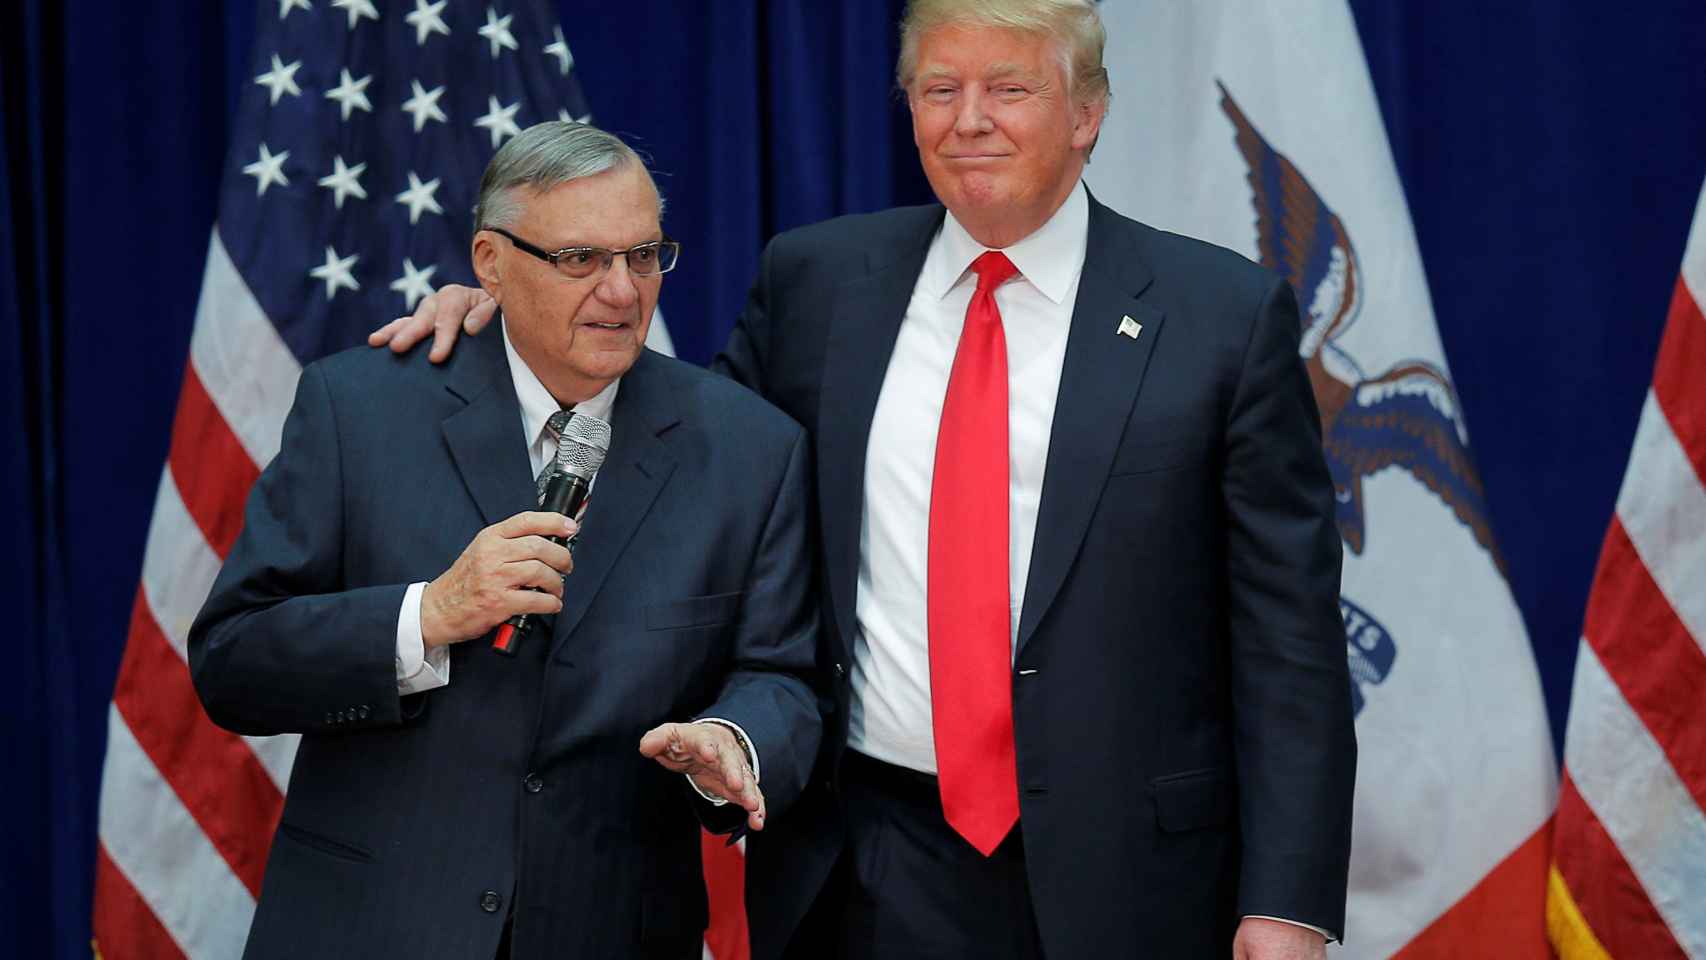 Donald Trump junto al indultado Arpaio  en una imagen de 2016.